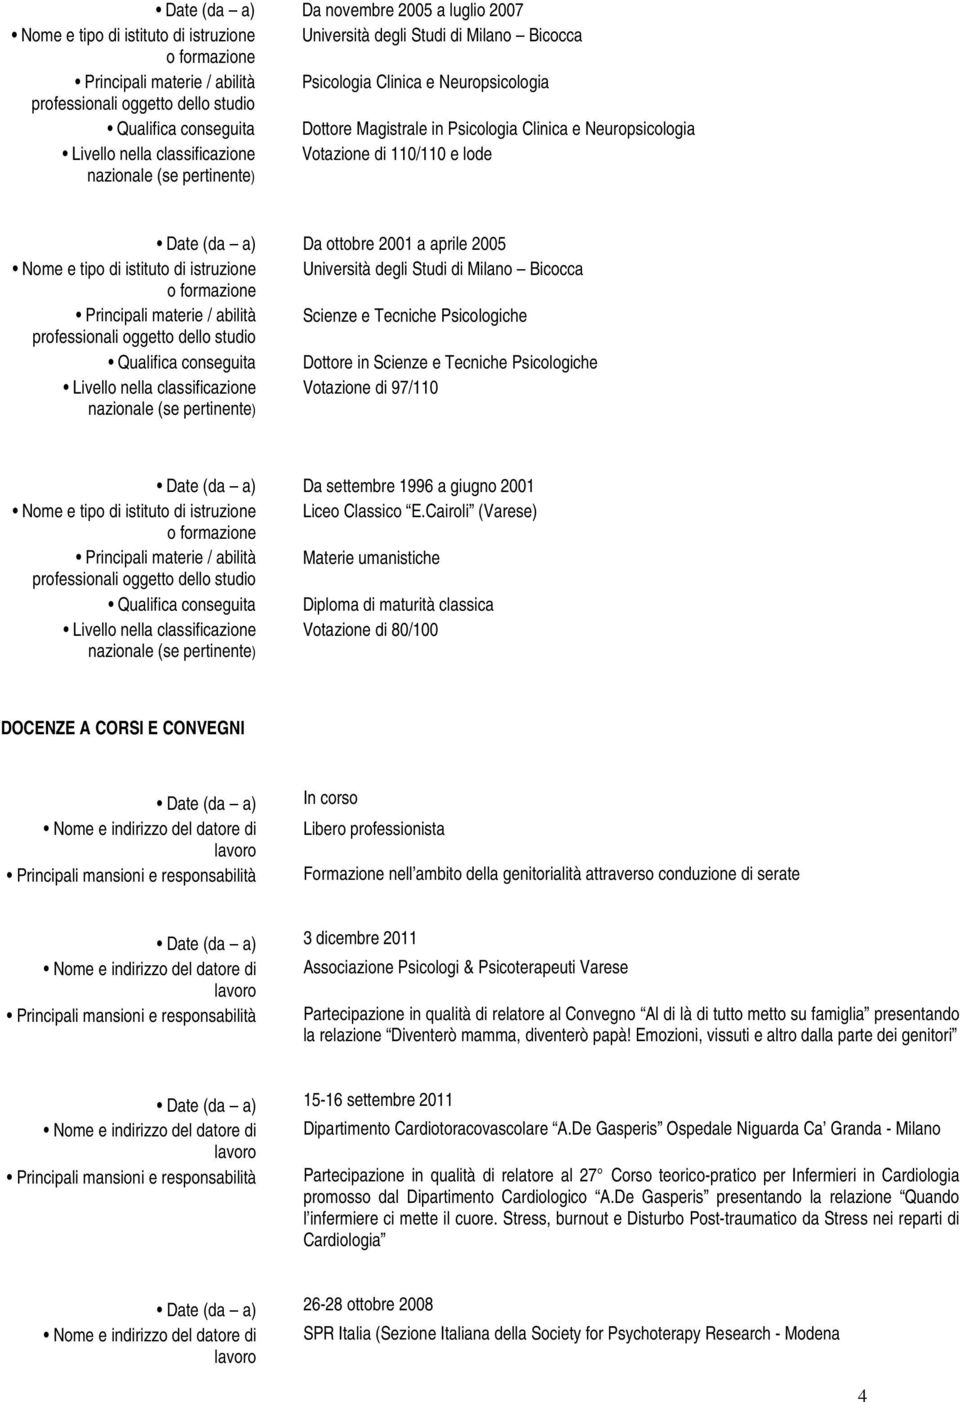 Milano Bicocca Scienze e Tecniche Psicologiche Dottore in Scienze e Tecniche Psicologiche Livello nella classificazione Votazione di 97/110 nazionale (se pertinente) Da settembre 1996 a giugno 2001